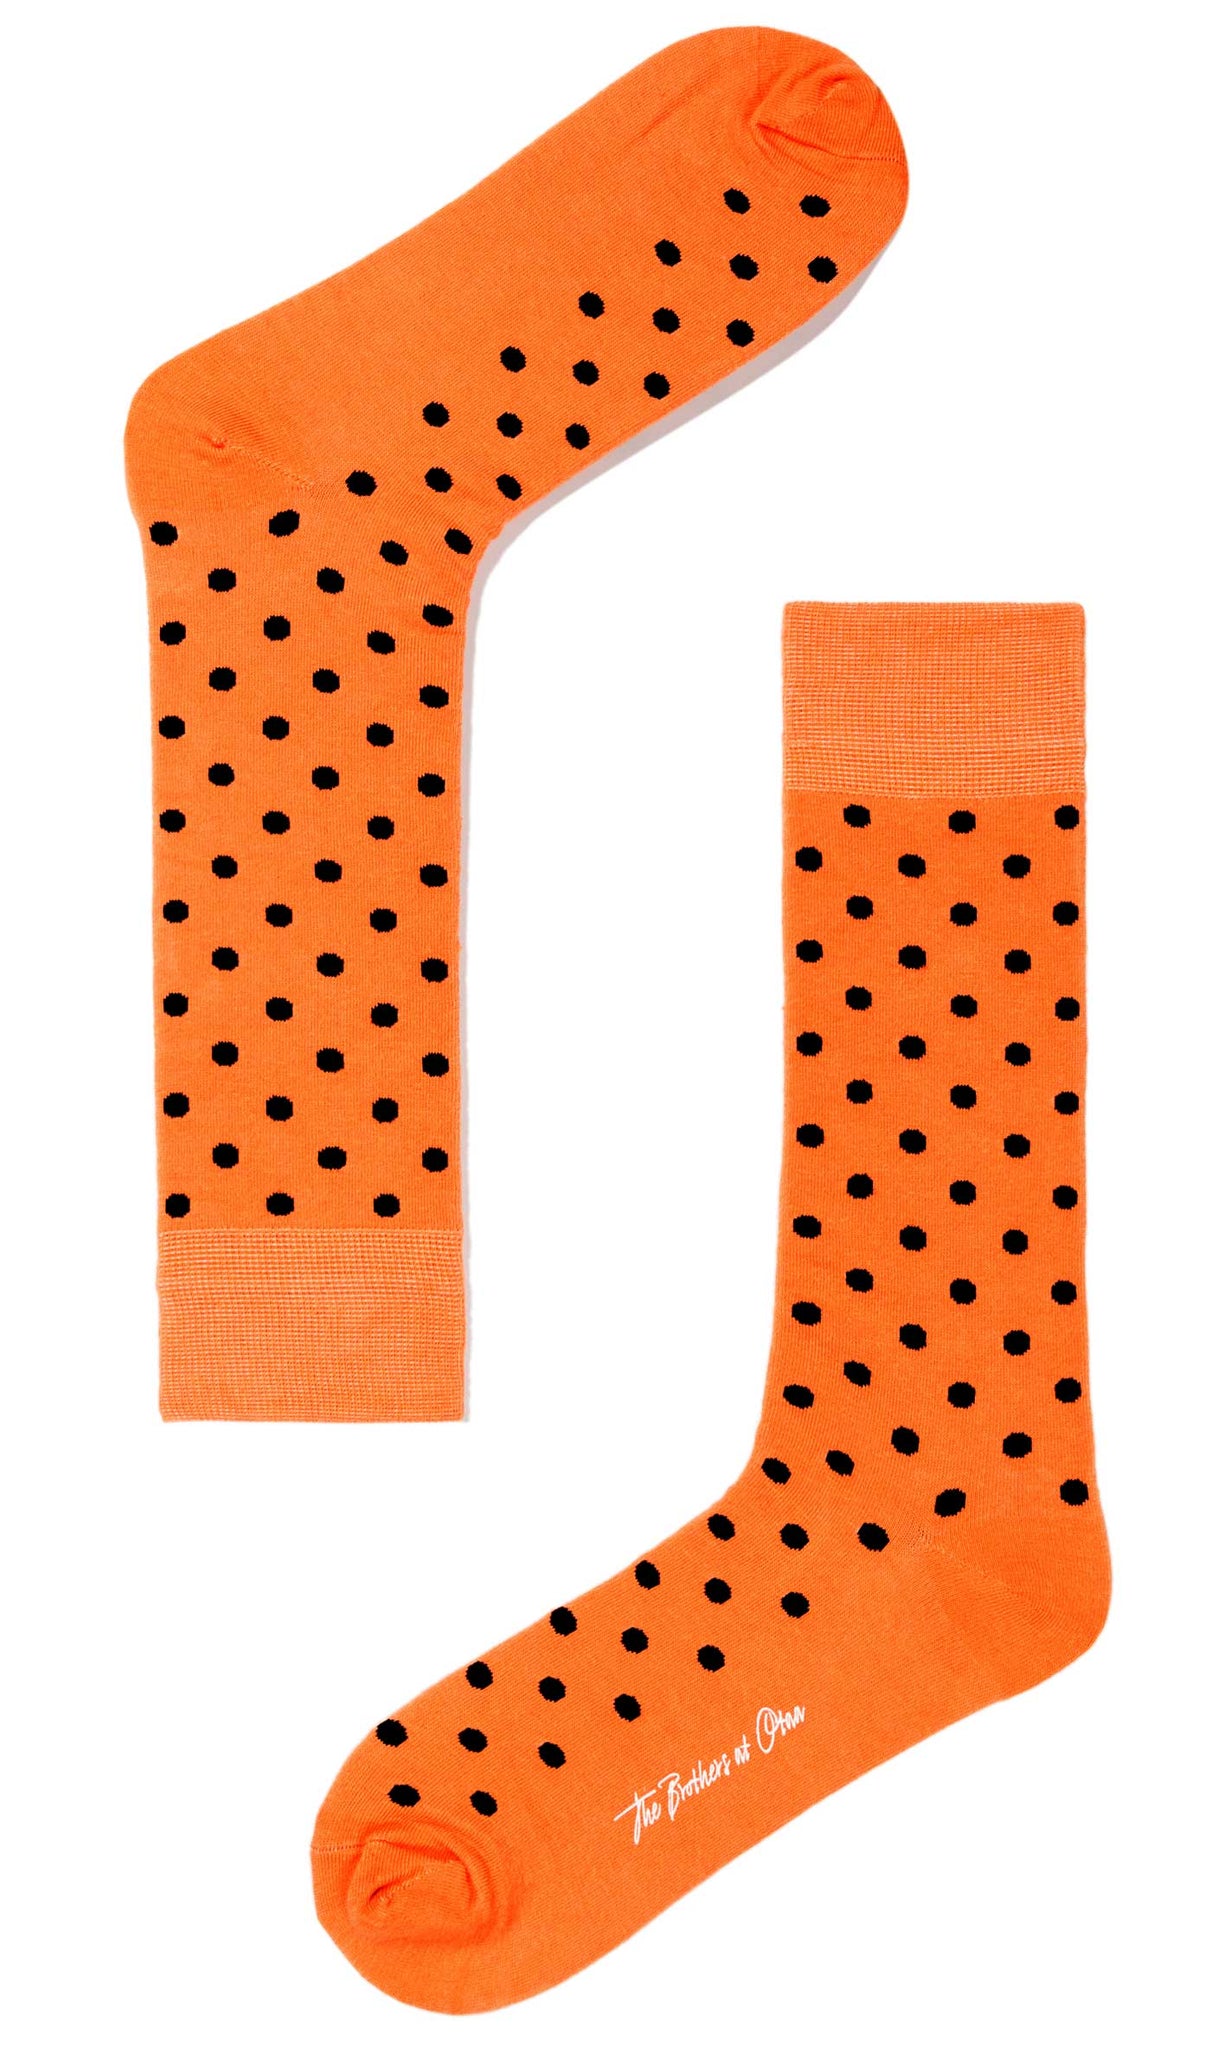 Light Orange Dot Socks | Mens Happy Black Polka Dots Cotton Crew Socks ...